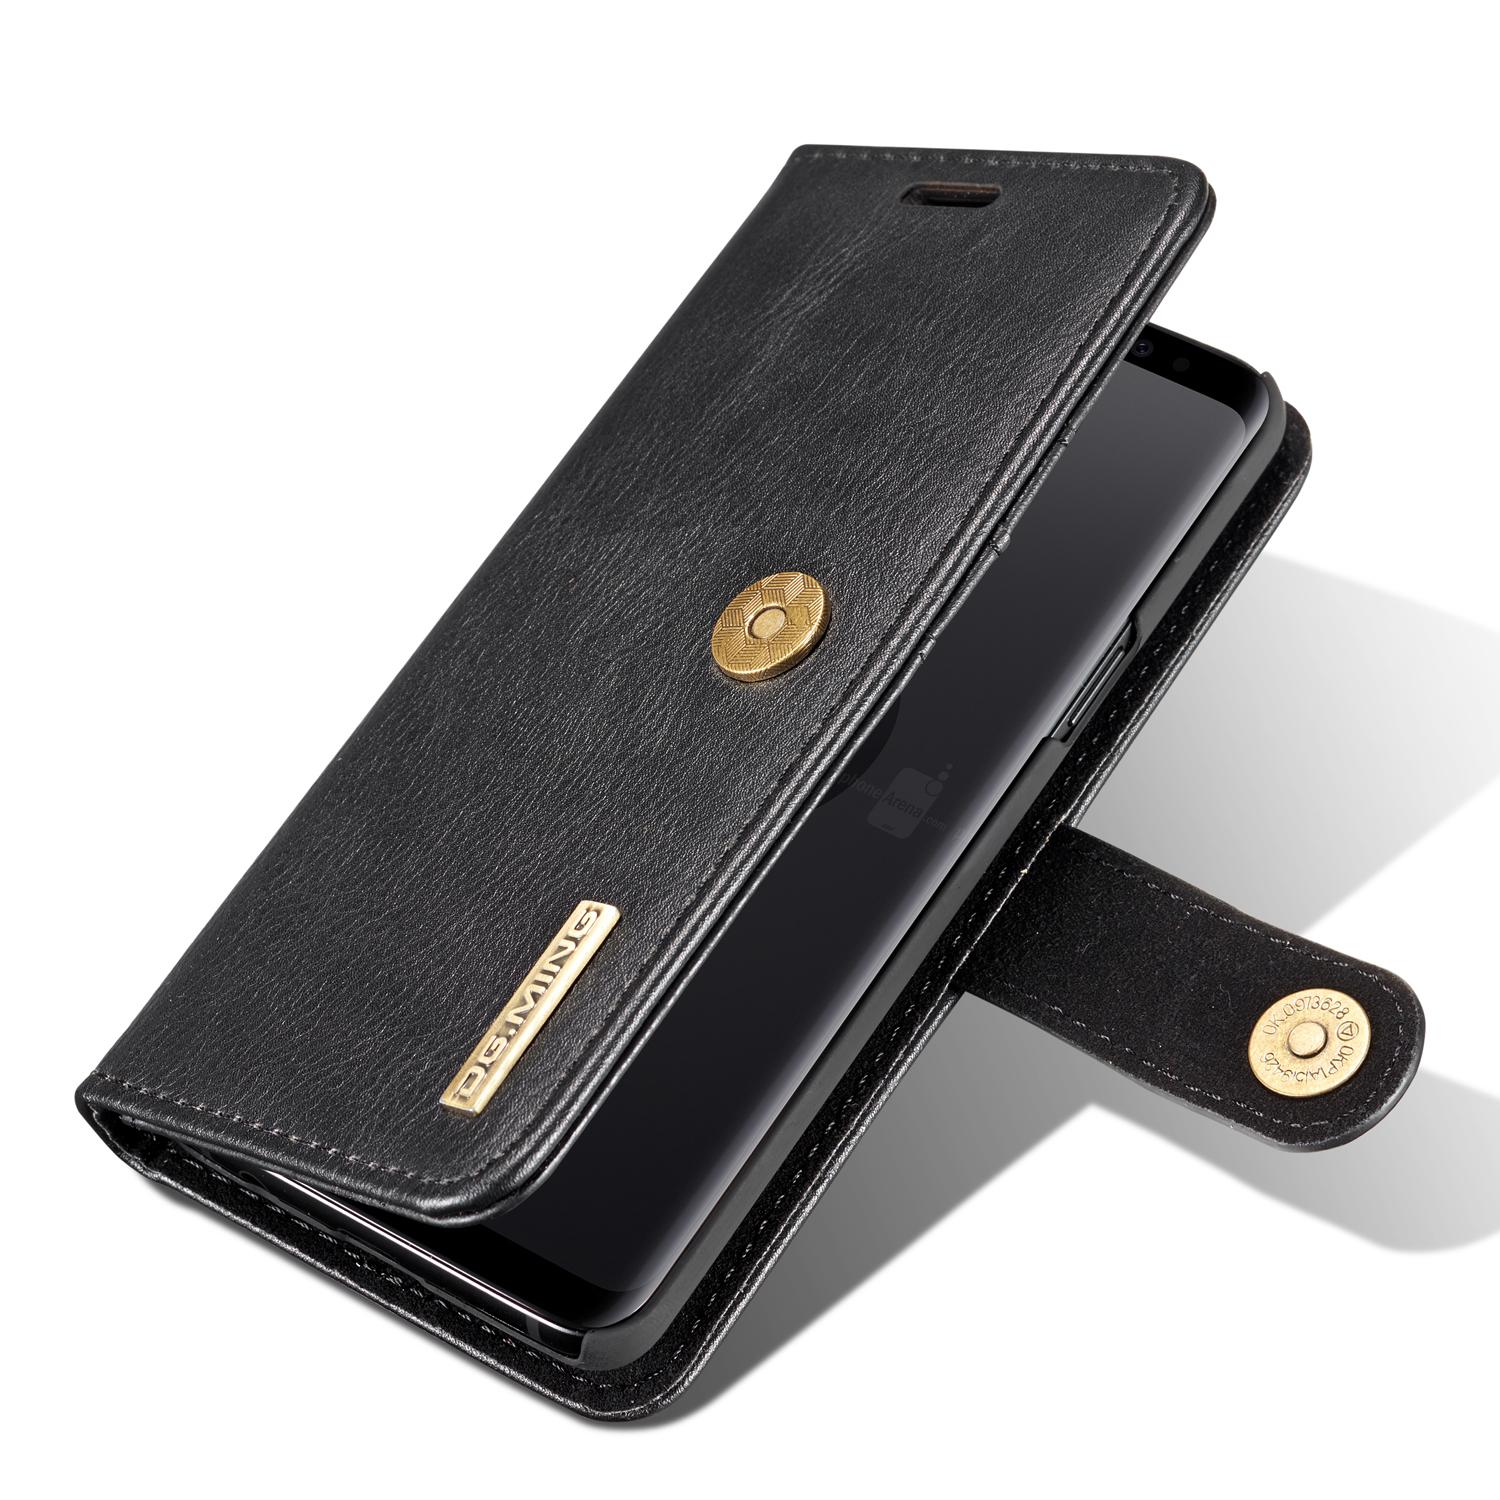 Samsung Galaxy S9 Plånboksfodral med avtagbart skal, svart